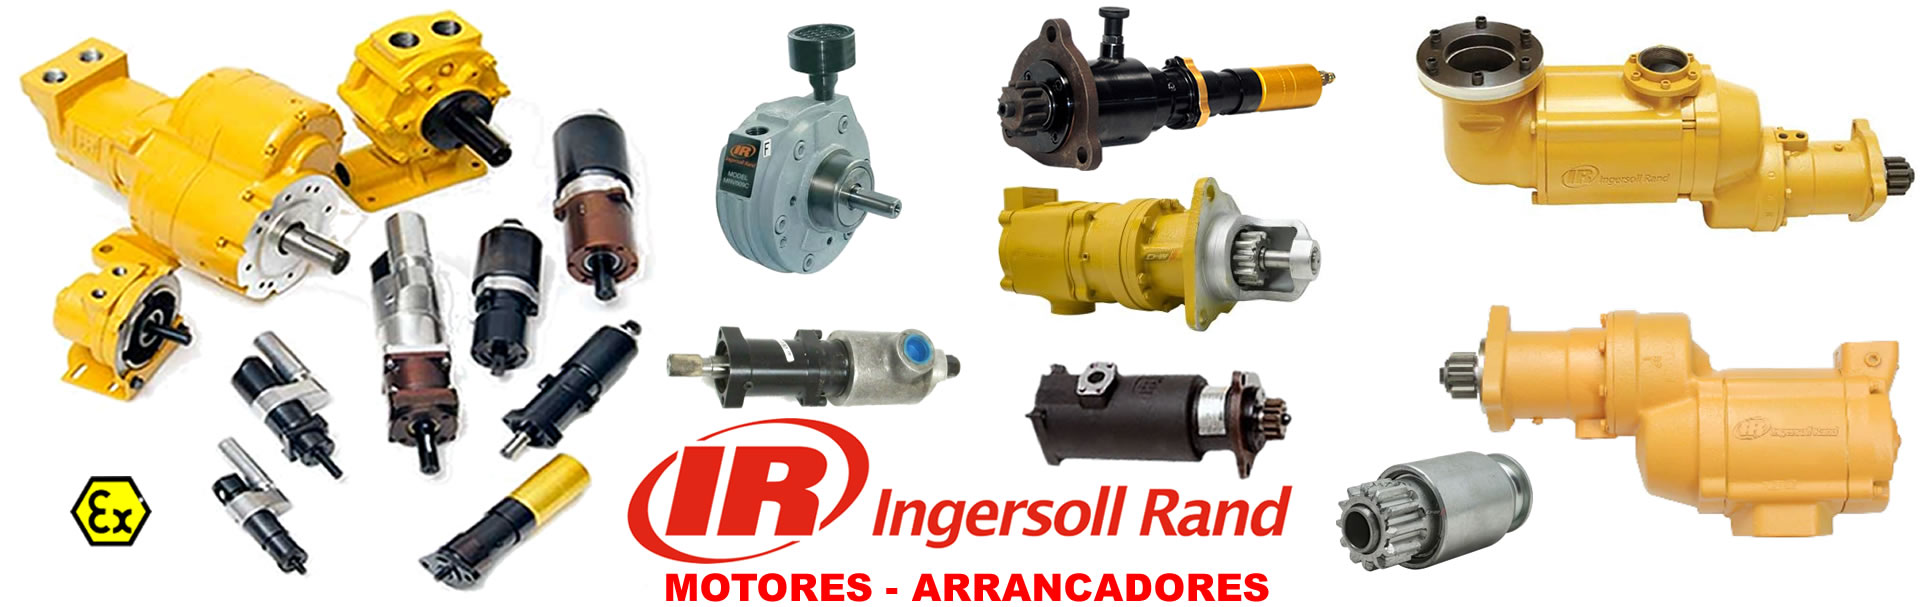 alcaner_ingersoll-rand_soluciones-industria-automación_equipamento_maquinaria_servicio-tecnico_distribuidor-oficial-ingersoll-rand_madrid-espana_banner-6-ir-motores-arrancadores